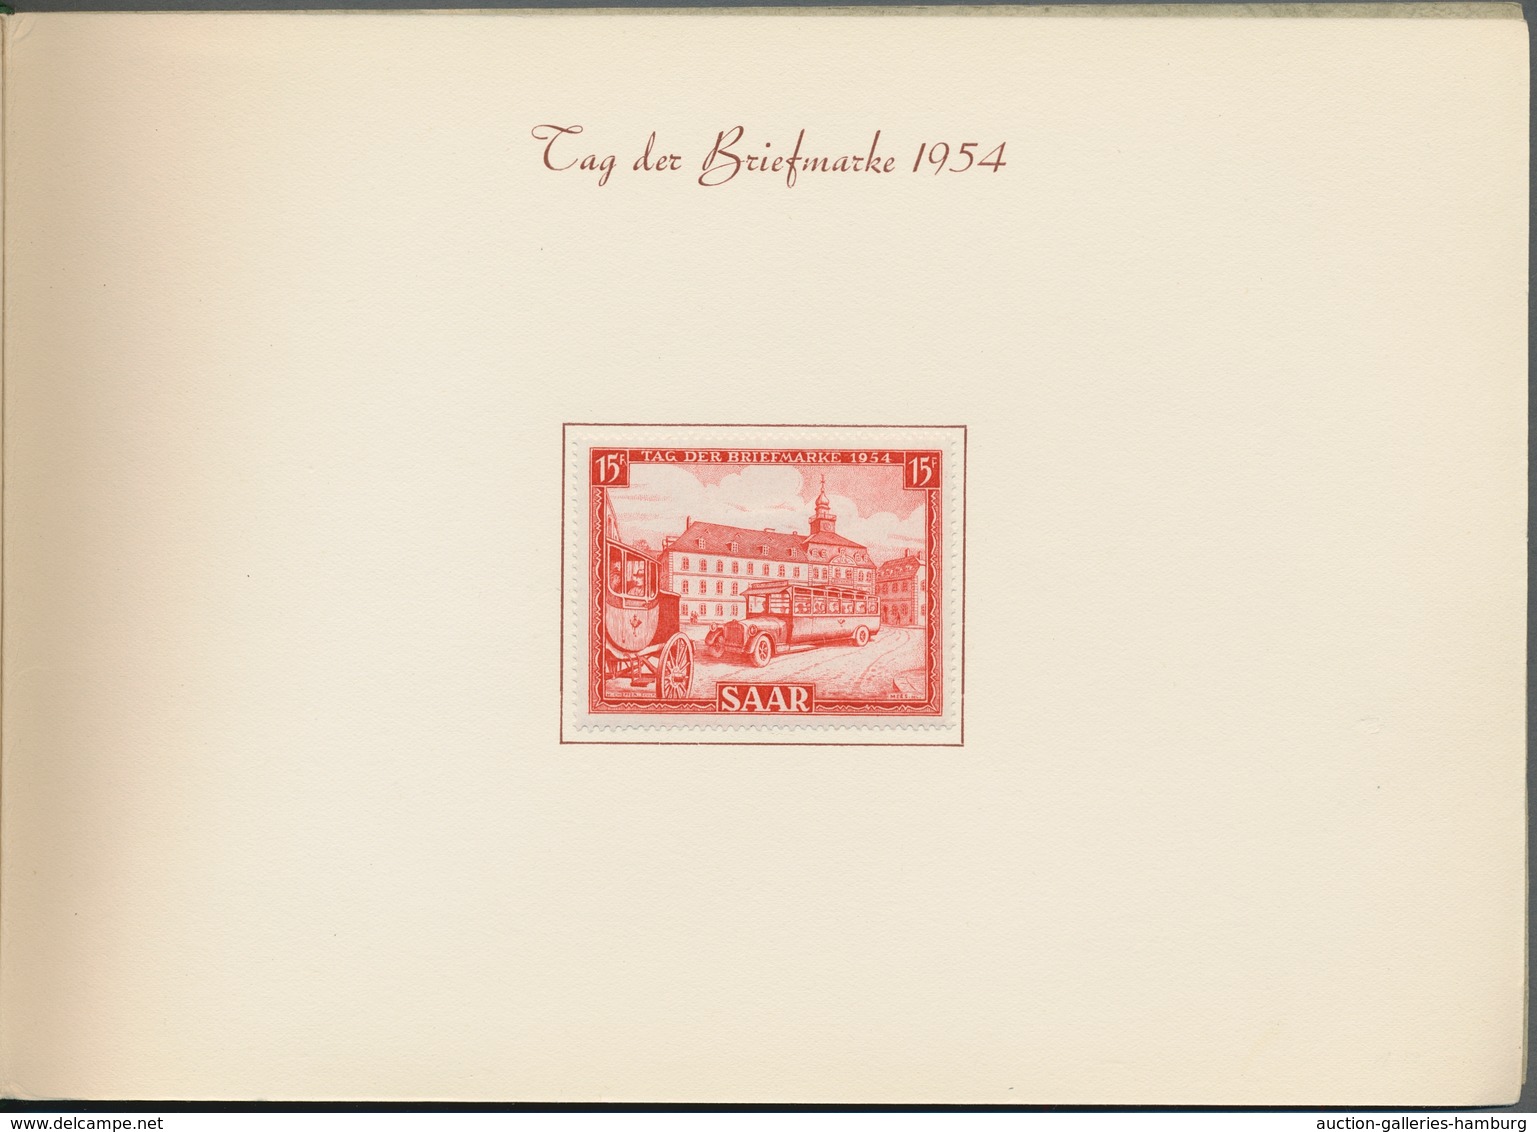 Saarland (1947/56): 1952-54, offizielles Geschenkheft mit Kordellbindung und insgesamt 22 ungebrauch